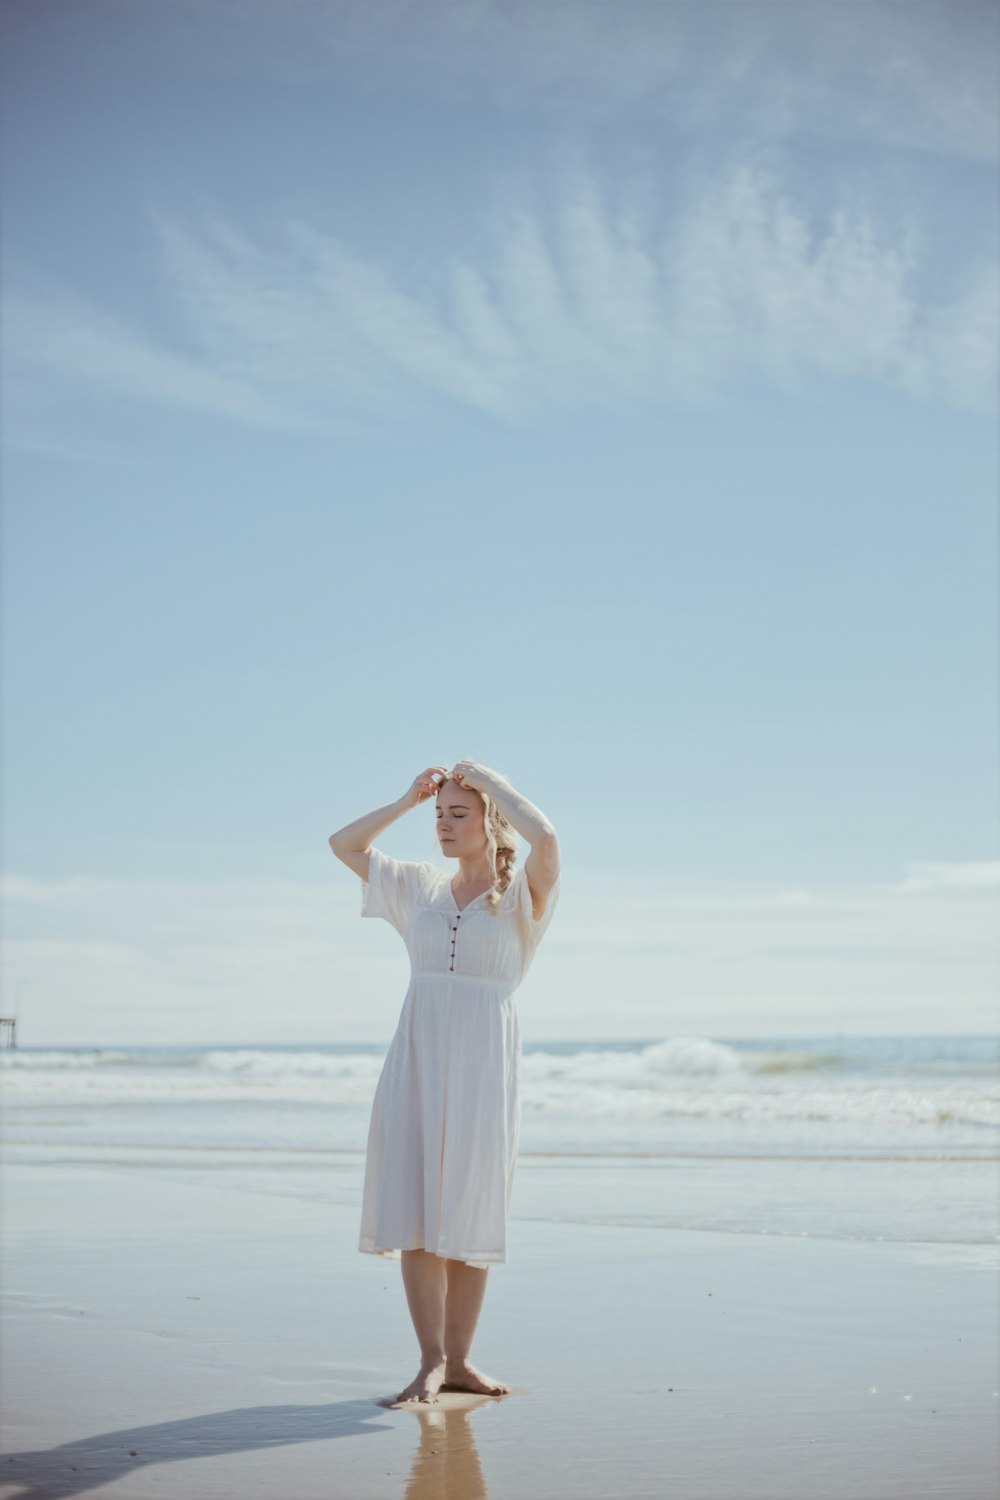 낮 동안 해변에 서 있는 하얀 드레스를 입은 여자